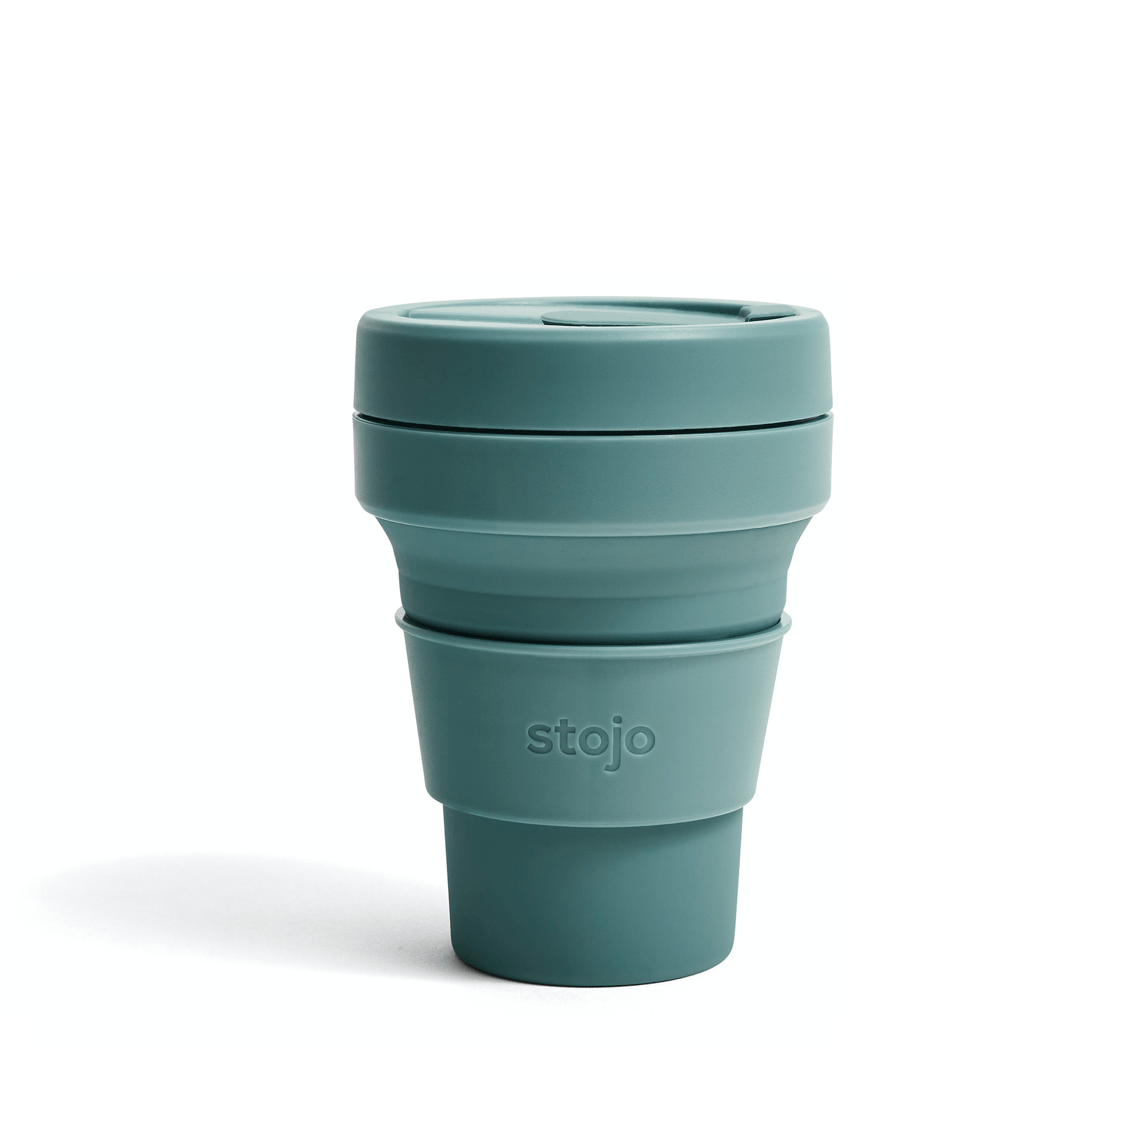 Vaso de silicona plegable Stojo de 12 onzas / 335ml de color eucaliptus azul